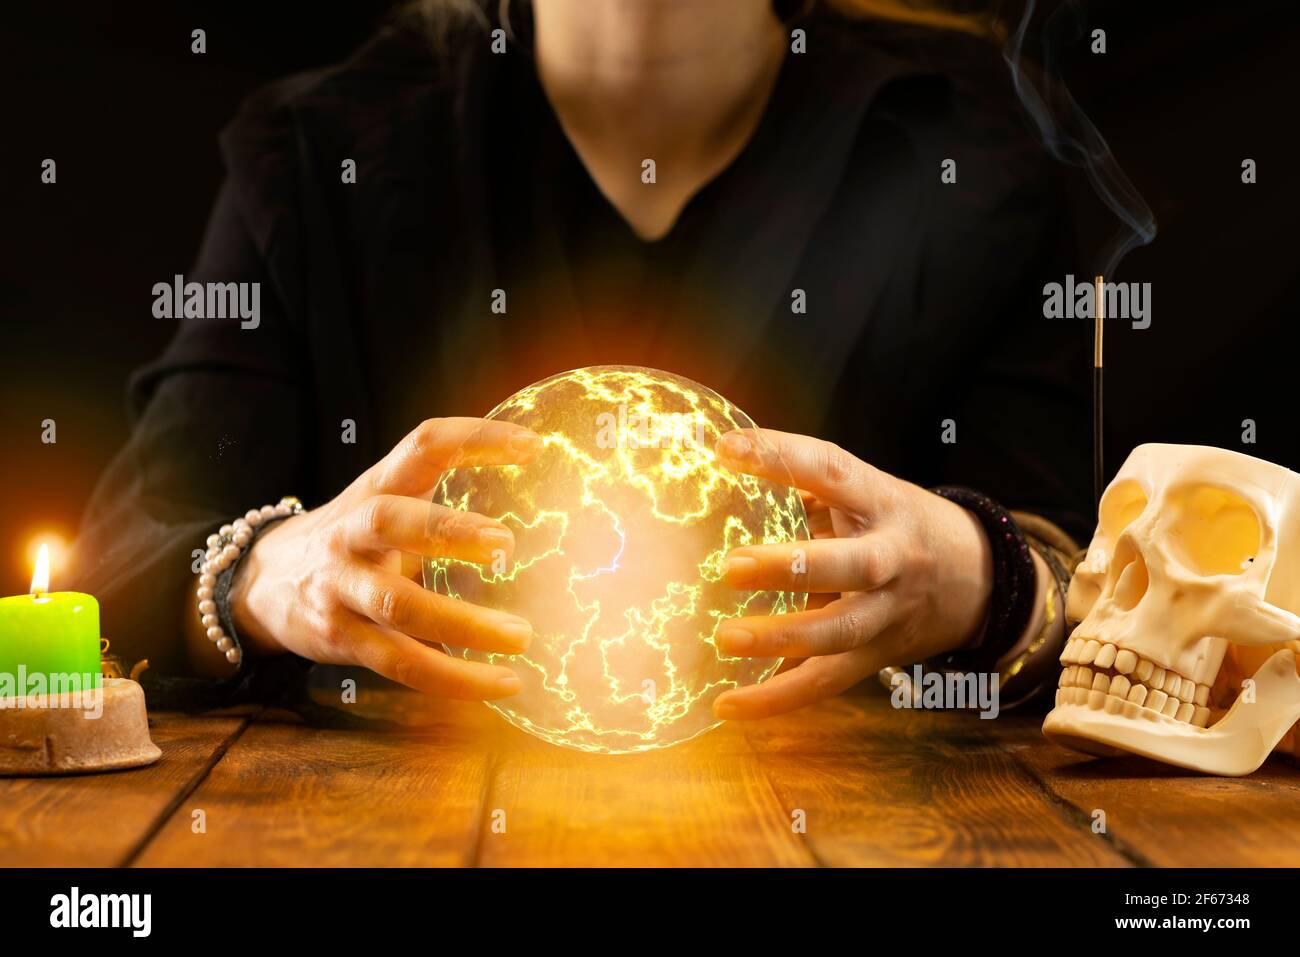 Ein Wahrsager oder orakel mit Objekten zum Wahrsagen hält einen Feuerball  in seinen Händen, um die Zukunft während der Sitzung vorherzusagen.  Psychische Messwerte A Stockfotografie - Alamy